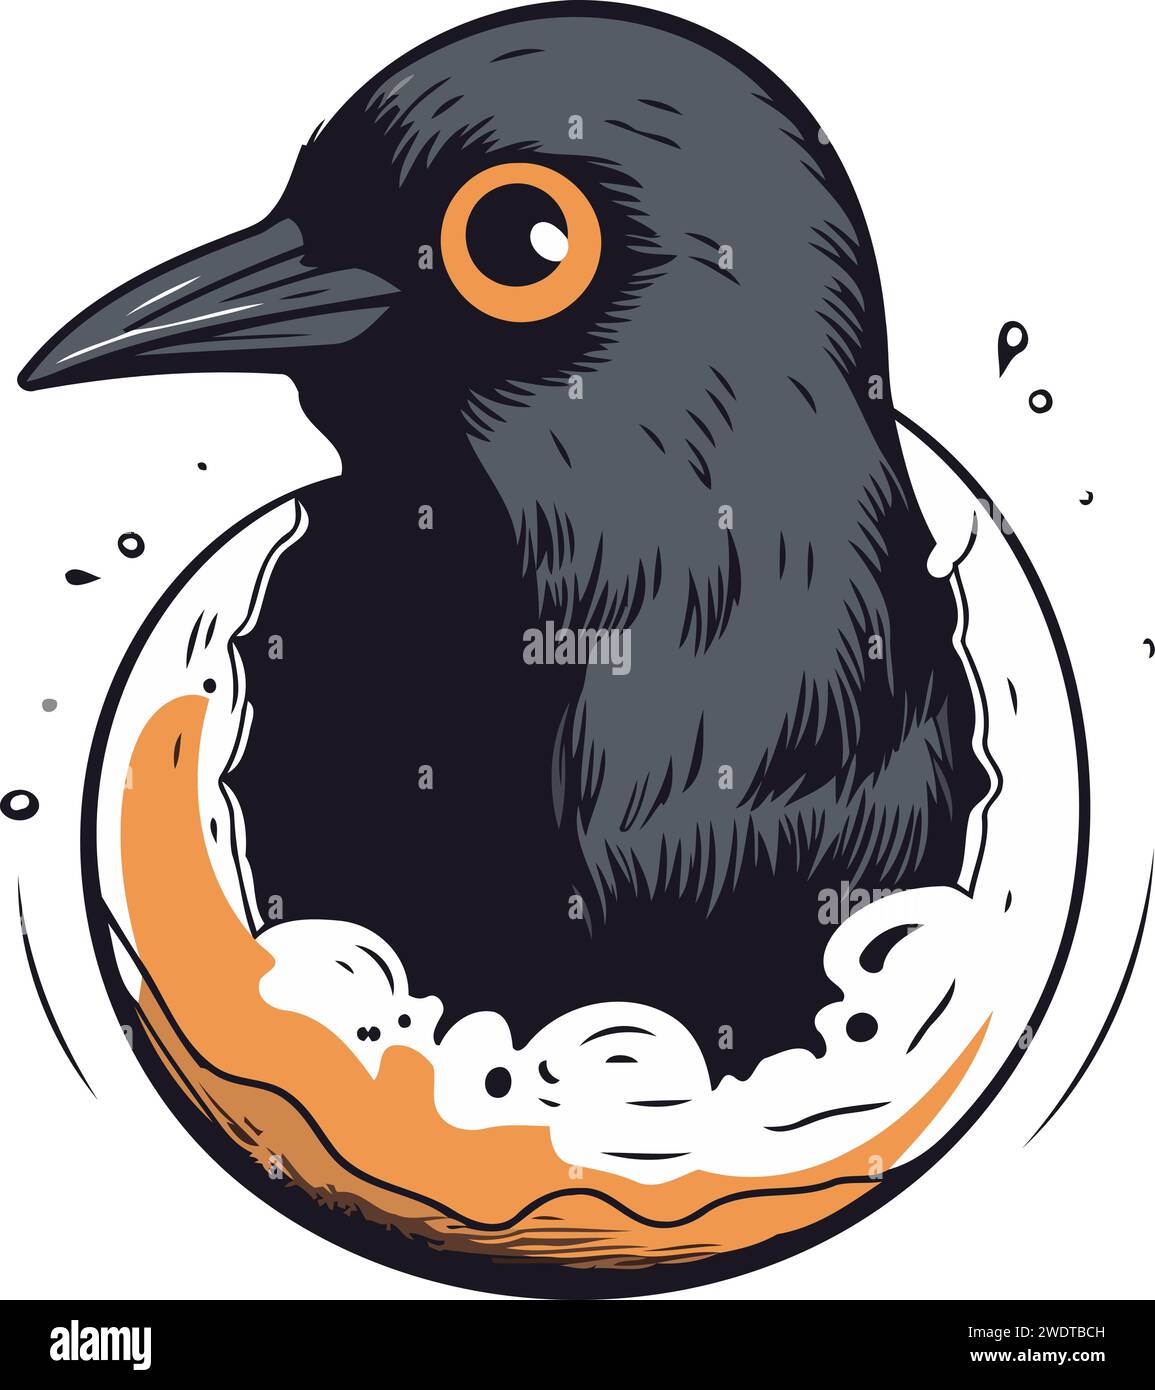 Illustrazione vettoriale disegnata a mano di un uccello nero seduto su una ciambella Illustrazione Vettoriale